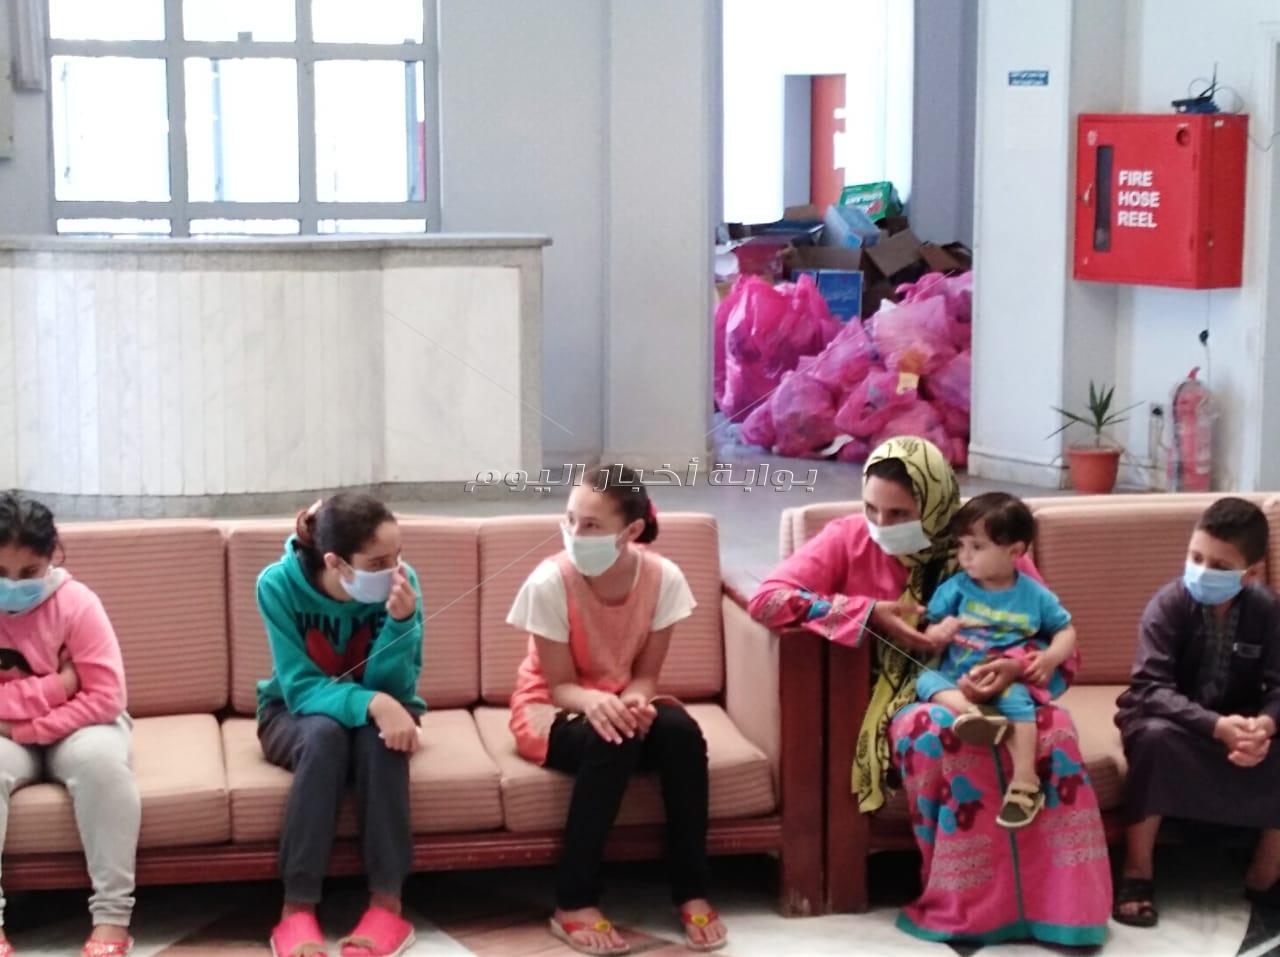  بالصور والفيديو  .مركز التدريب المدنى بدمنهور يحتفل بالعيد مع الأطفال بالأغاني وتوزيع الهدايا 